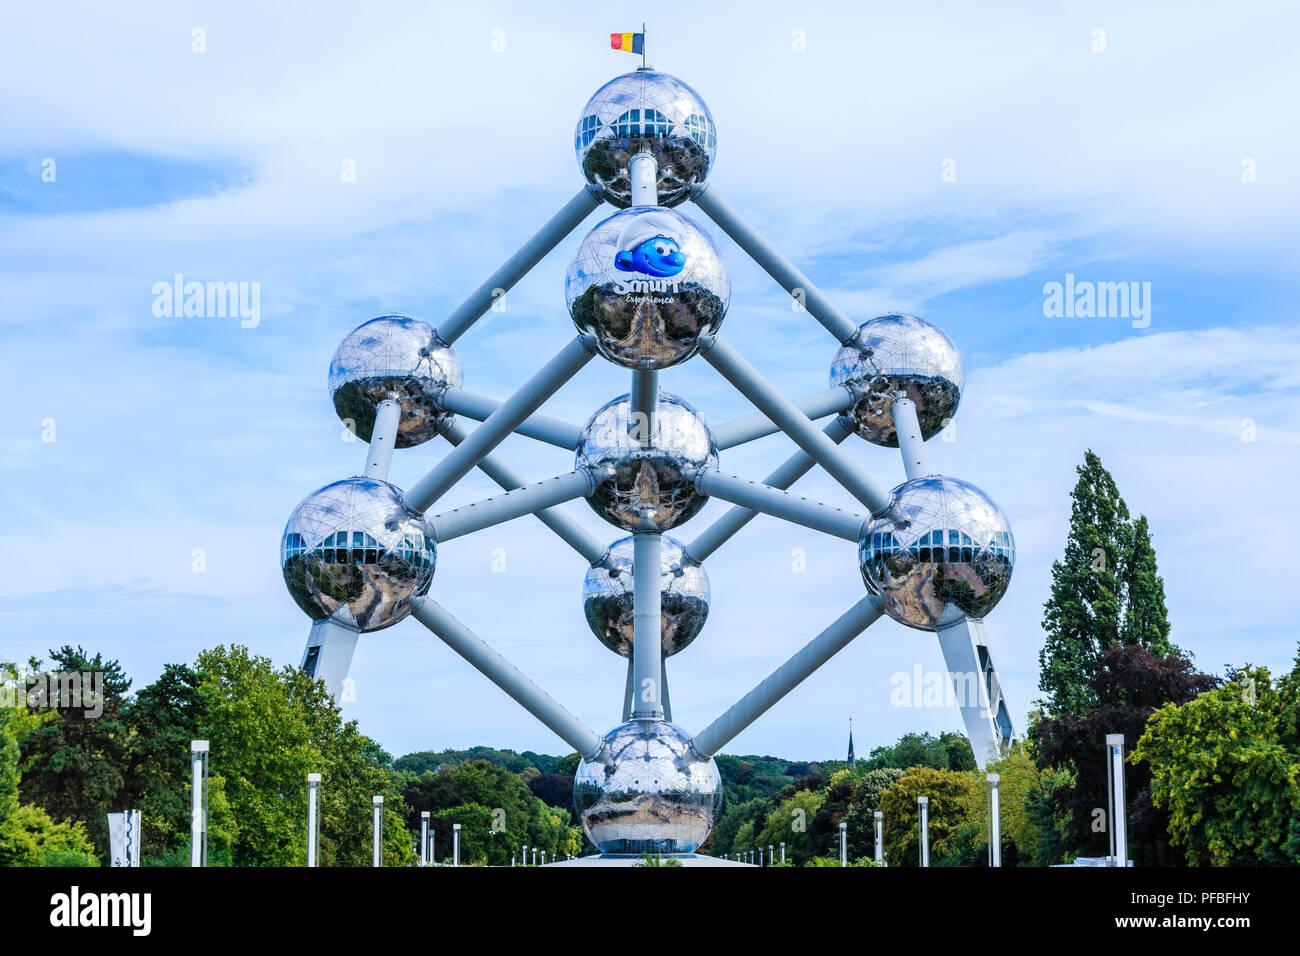 Brüssel, Belgien - 11 August 2018: Atomium, berühmten Struktur in Form eines Atoms, in das Messegelände in Brüssel. Stockfoto